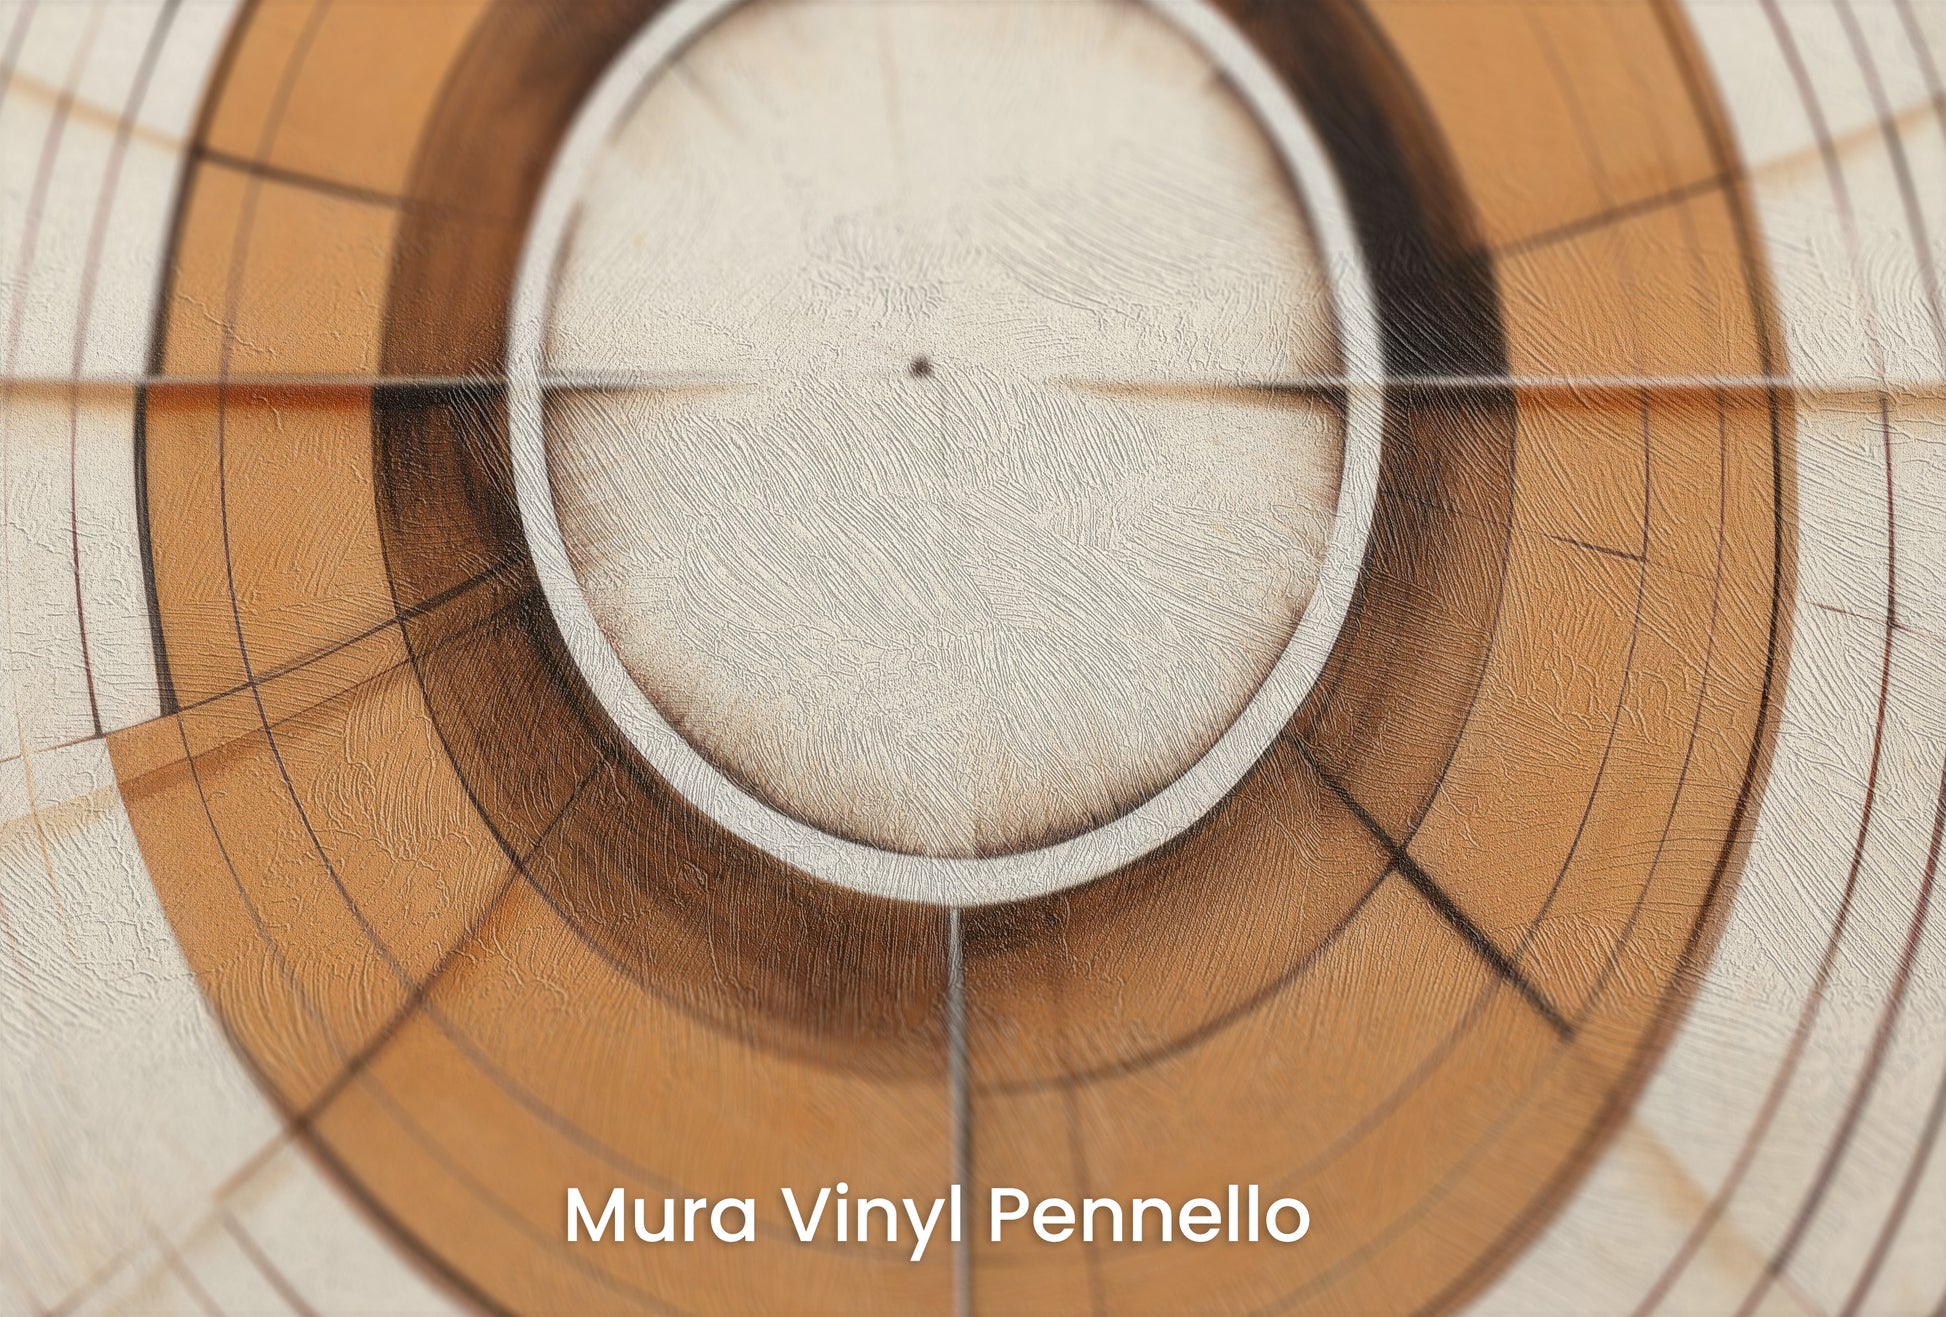 Zbliżenie na artystyczną fototapetę o nazwie ORBITAL GEO na podłożu Mura Vinyl Pennello - faktura pociągnięć pędzla malarskiego.